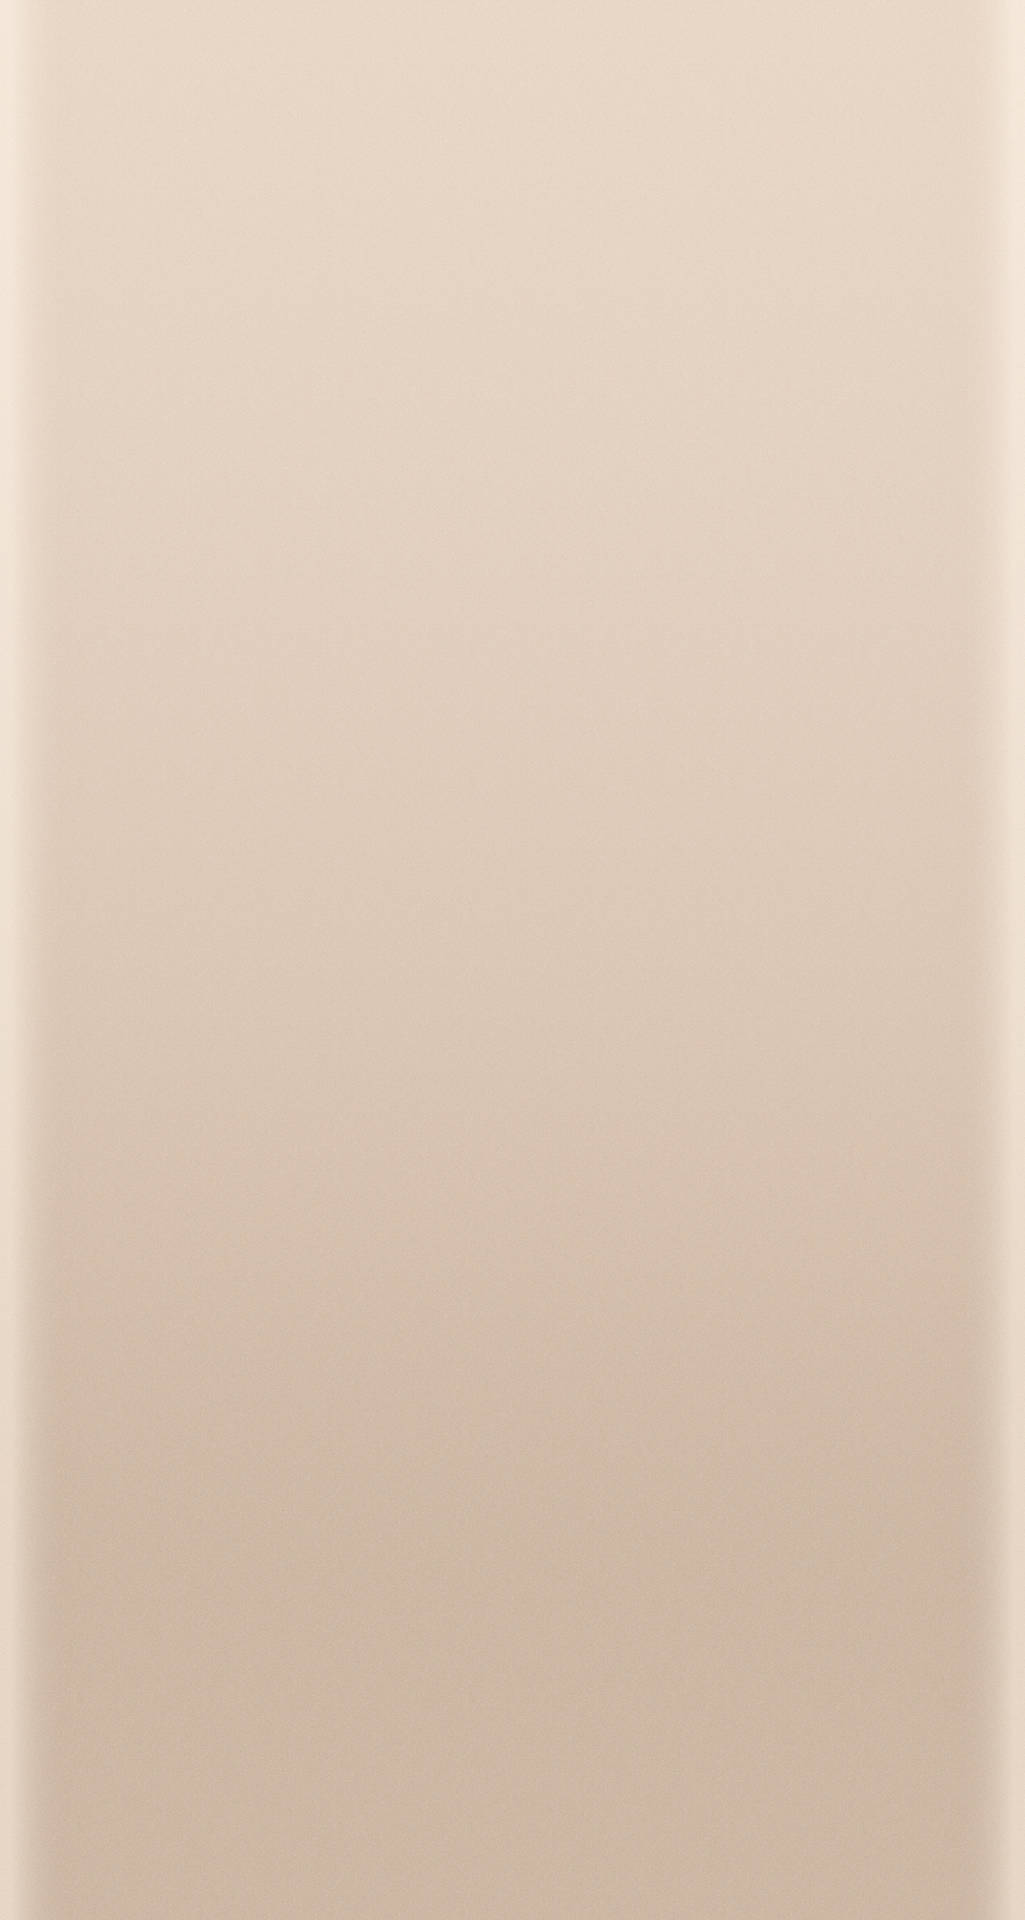 Einbeiger Hintergrund Mit Einem Weißen Quadrat Wallpaper